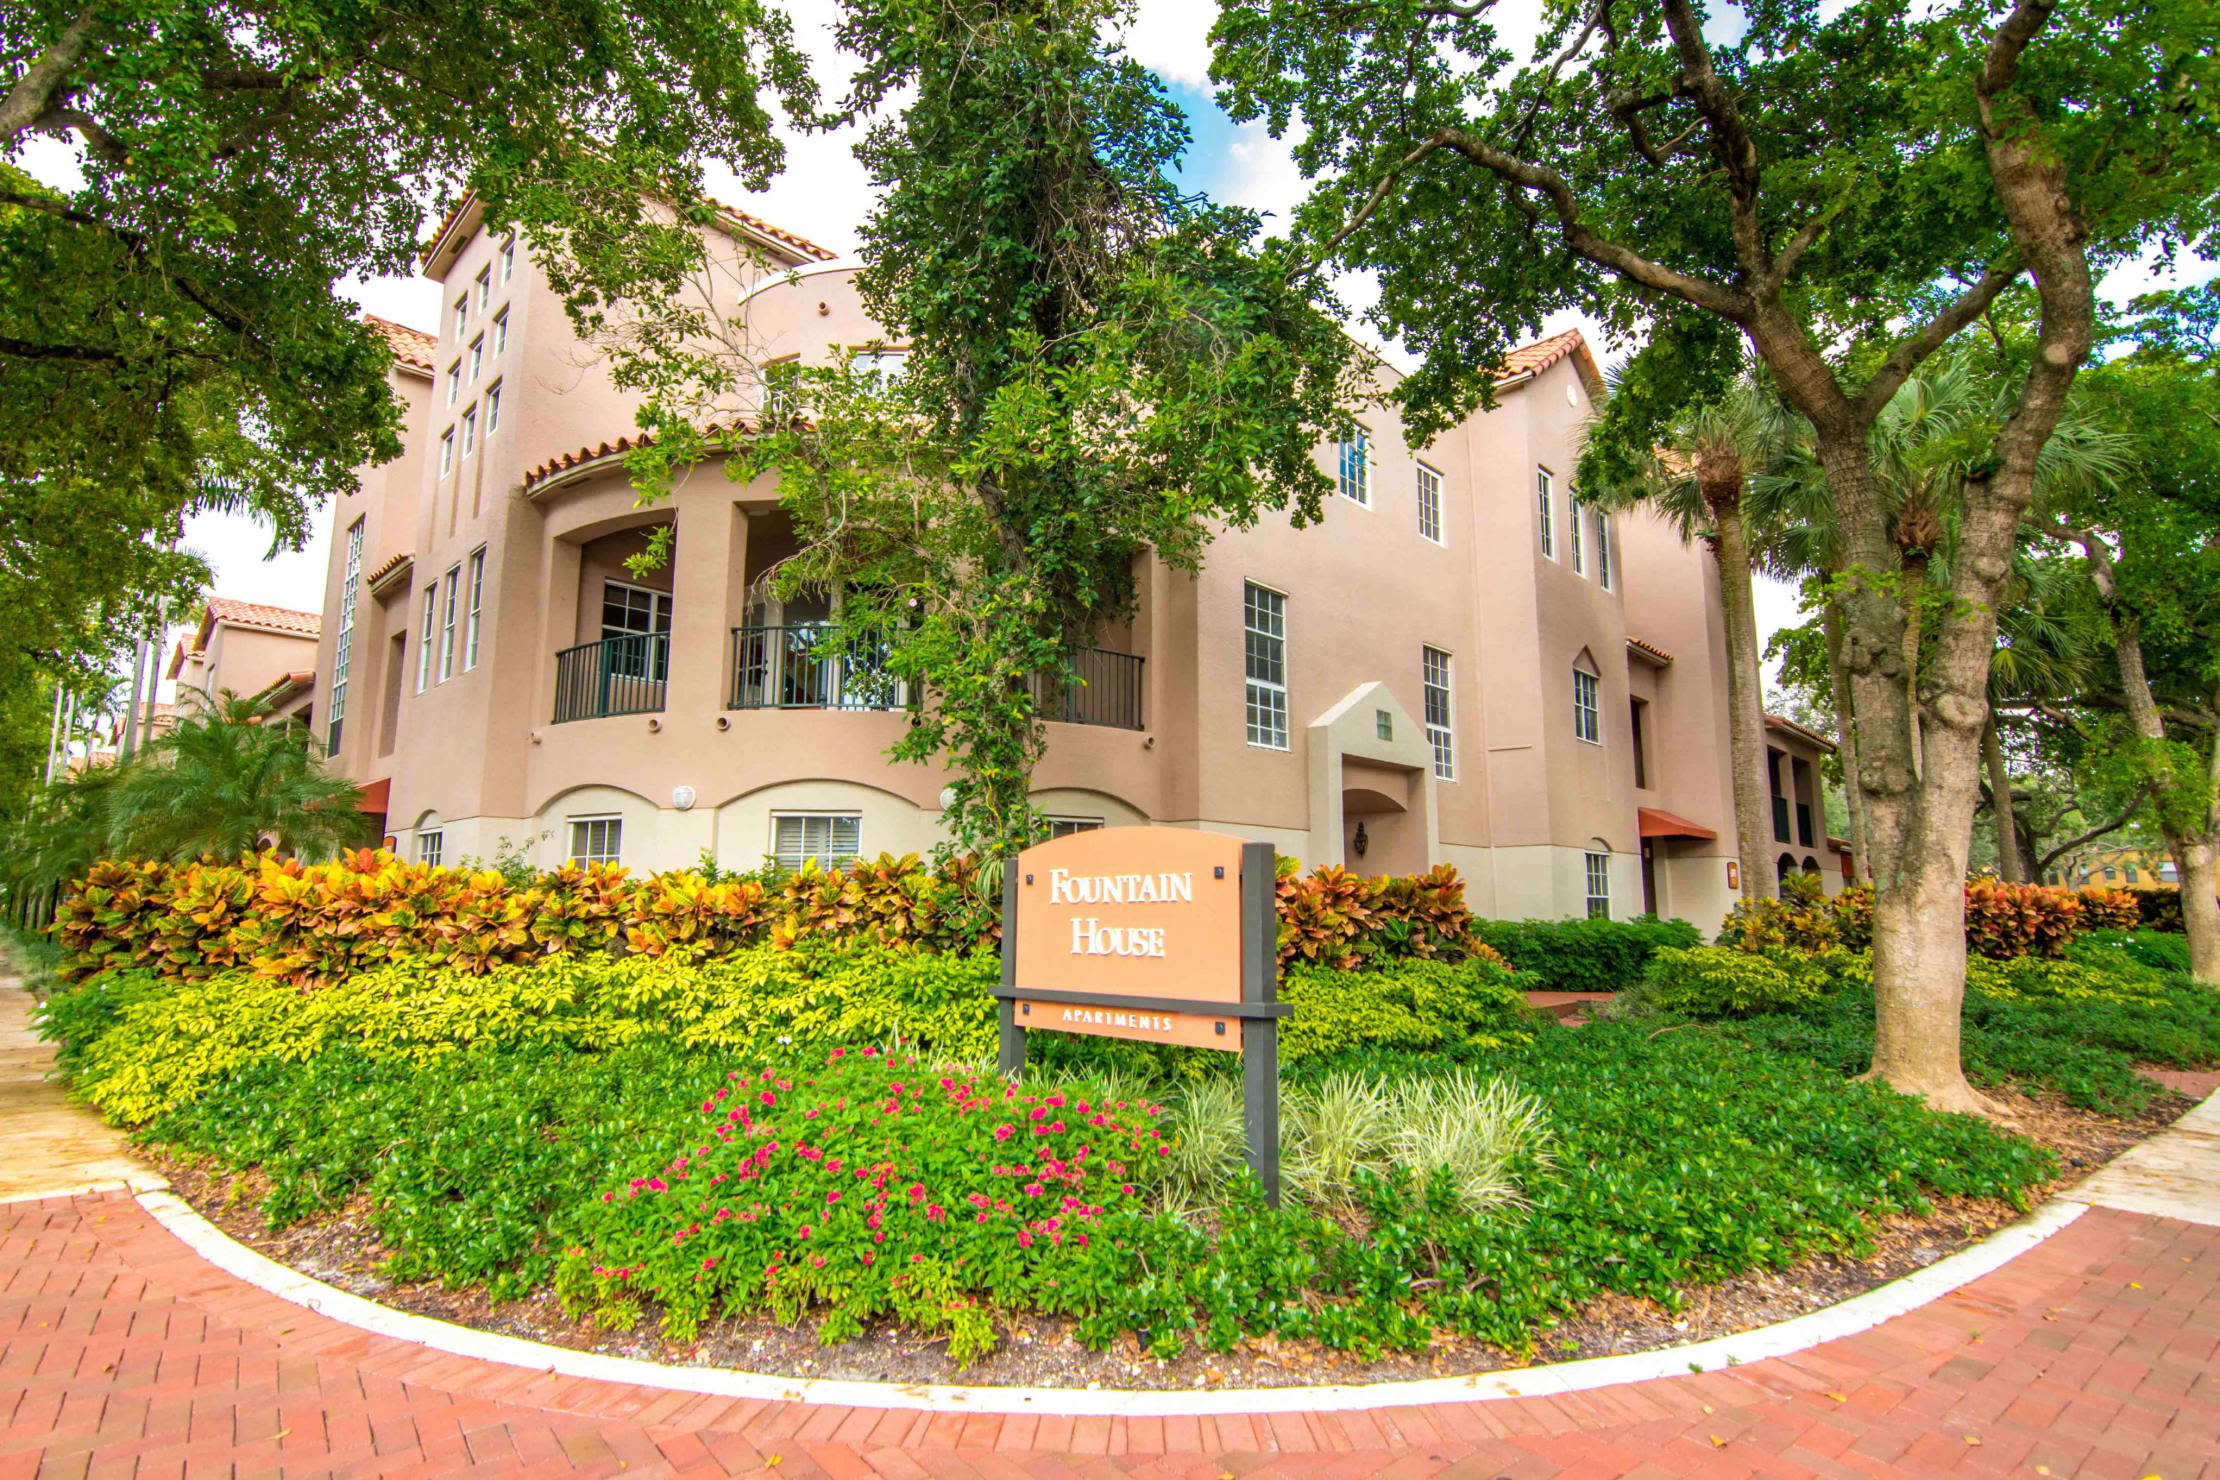 Main entrance to Fountain House Apartments in Miami Lakes, Florida